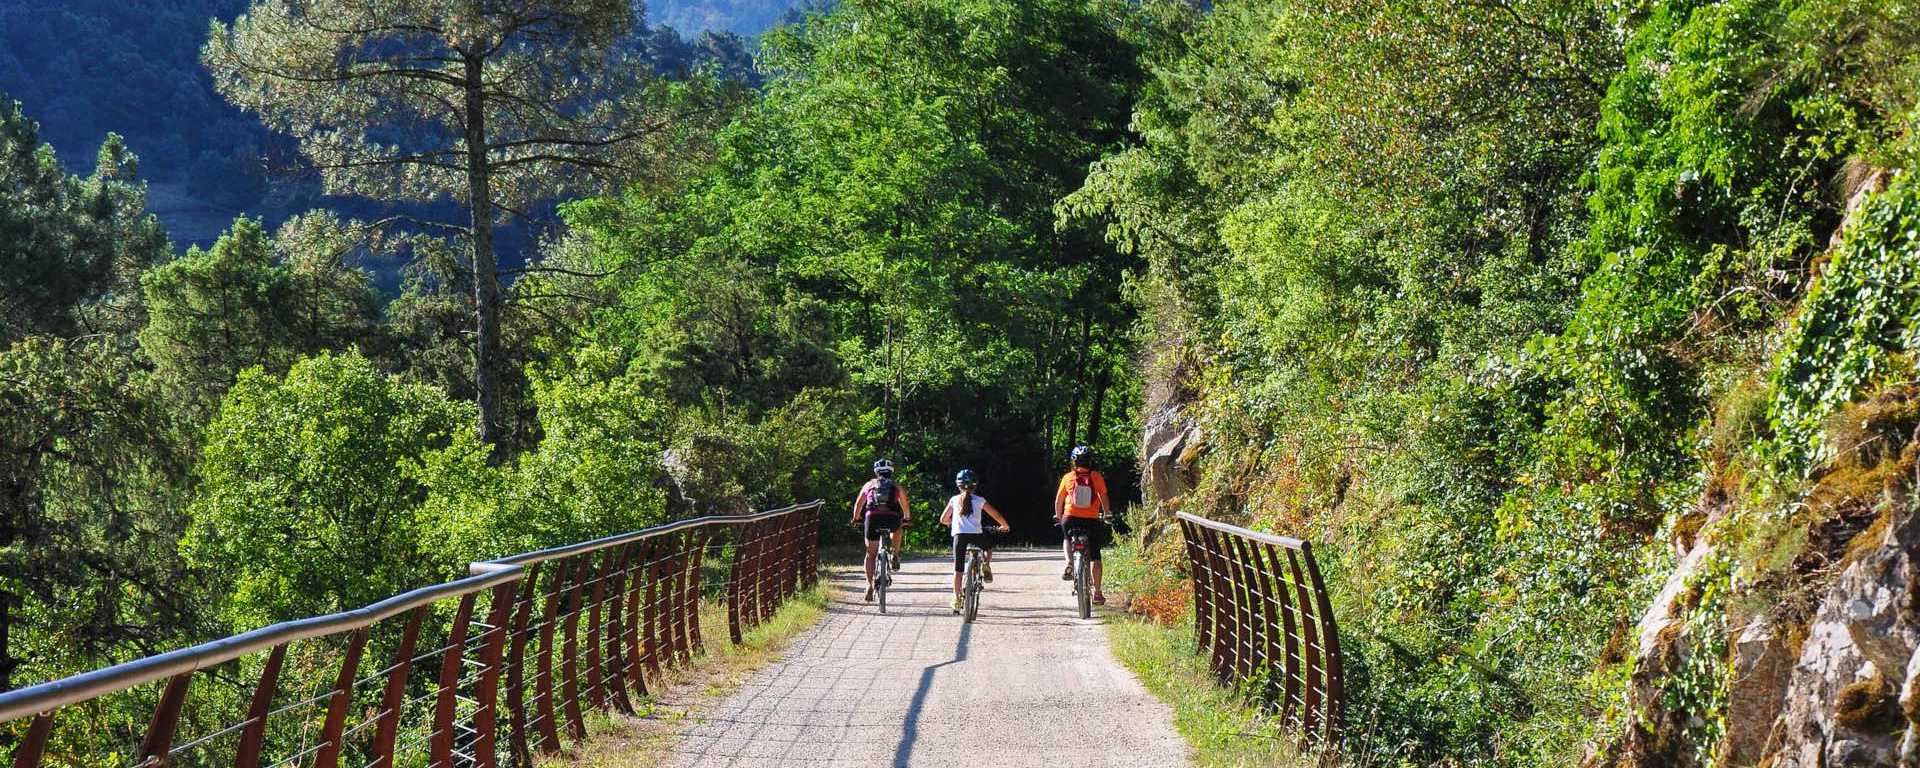 Véloroute et voie verte en Ardèche